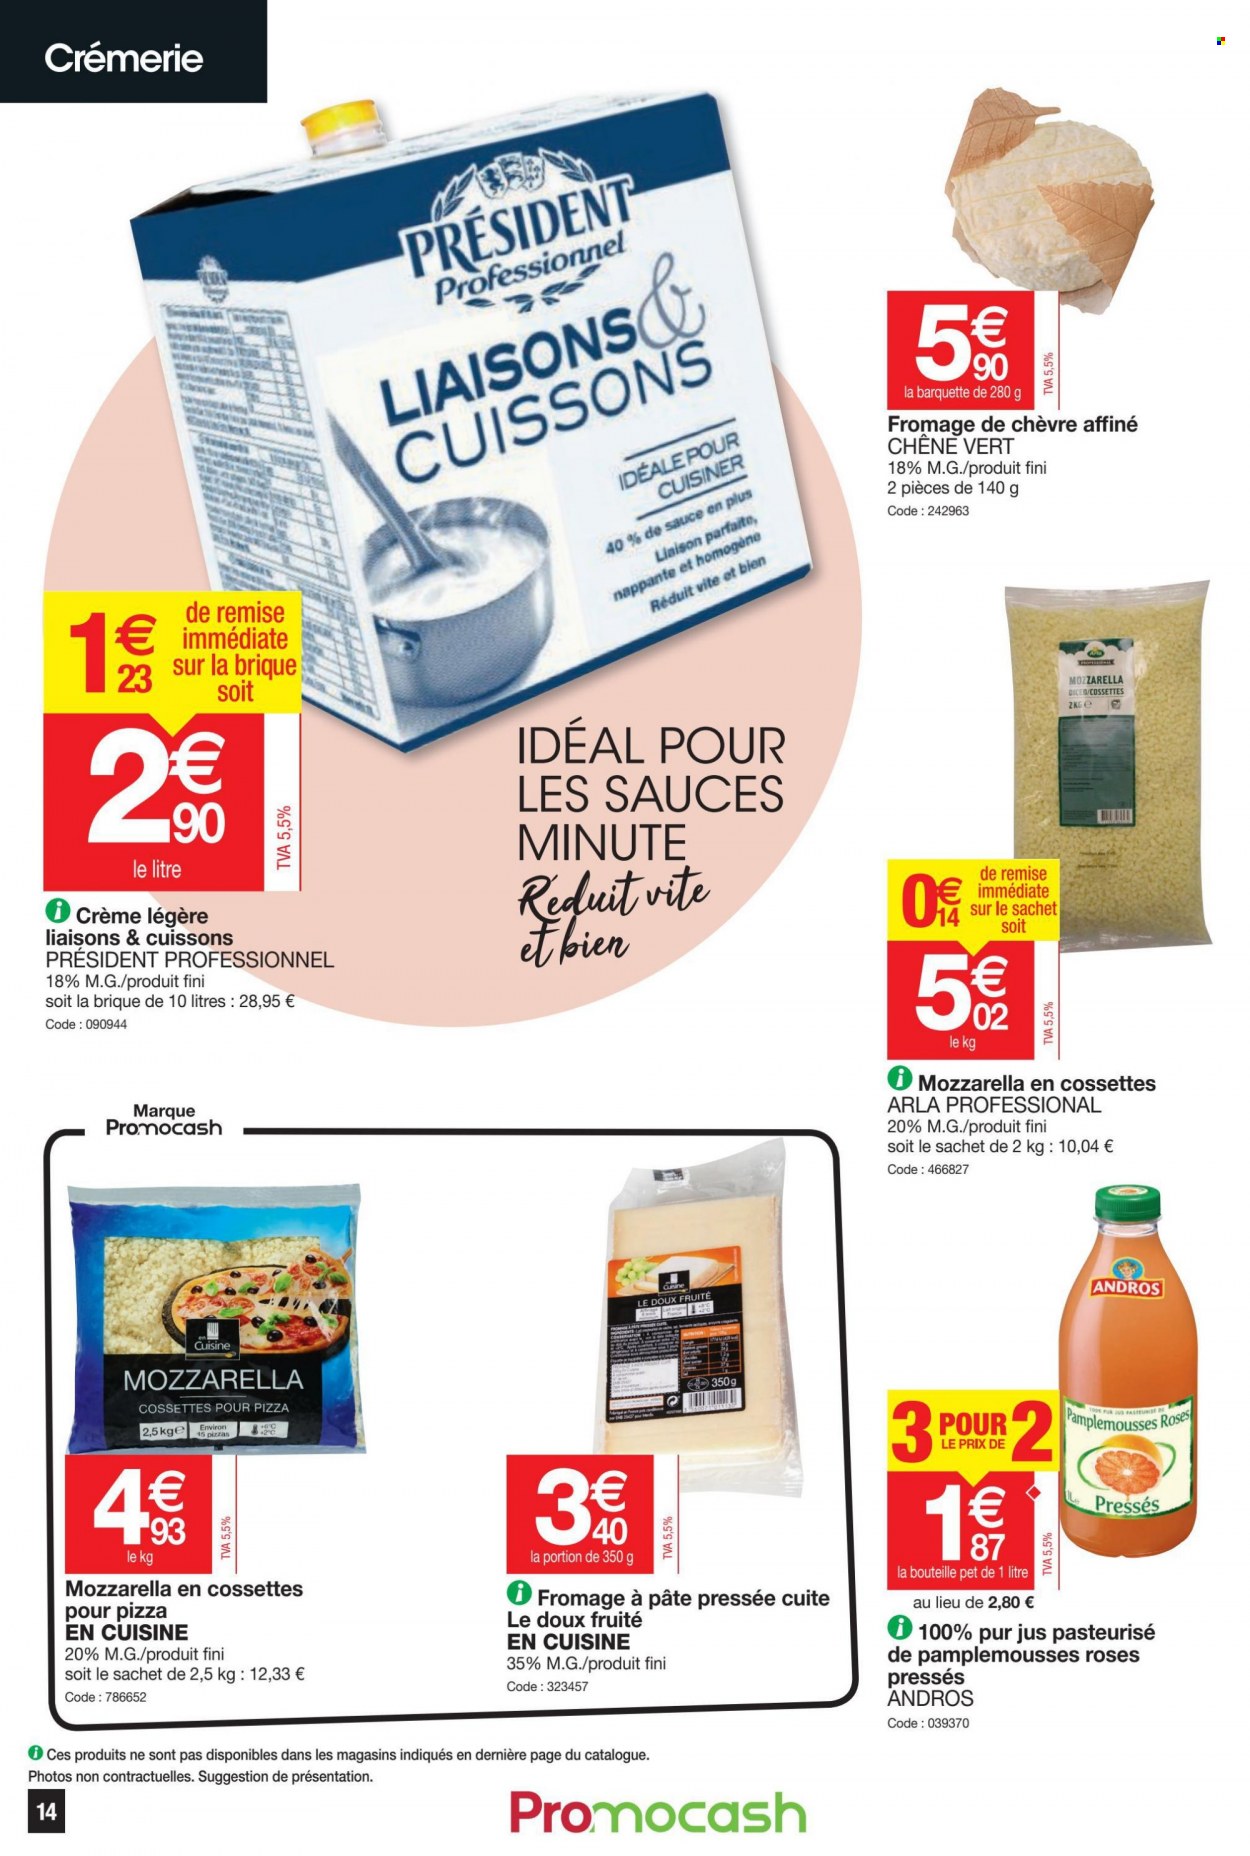 thumbnail - Catalogue Promocash - 12/05/2022 - 21/05/2022 - Produits soldés - fromage de chèvre, Président, ANDROS, crème liquide, jus, pur jus. Page 14.